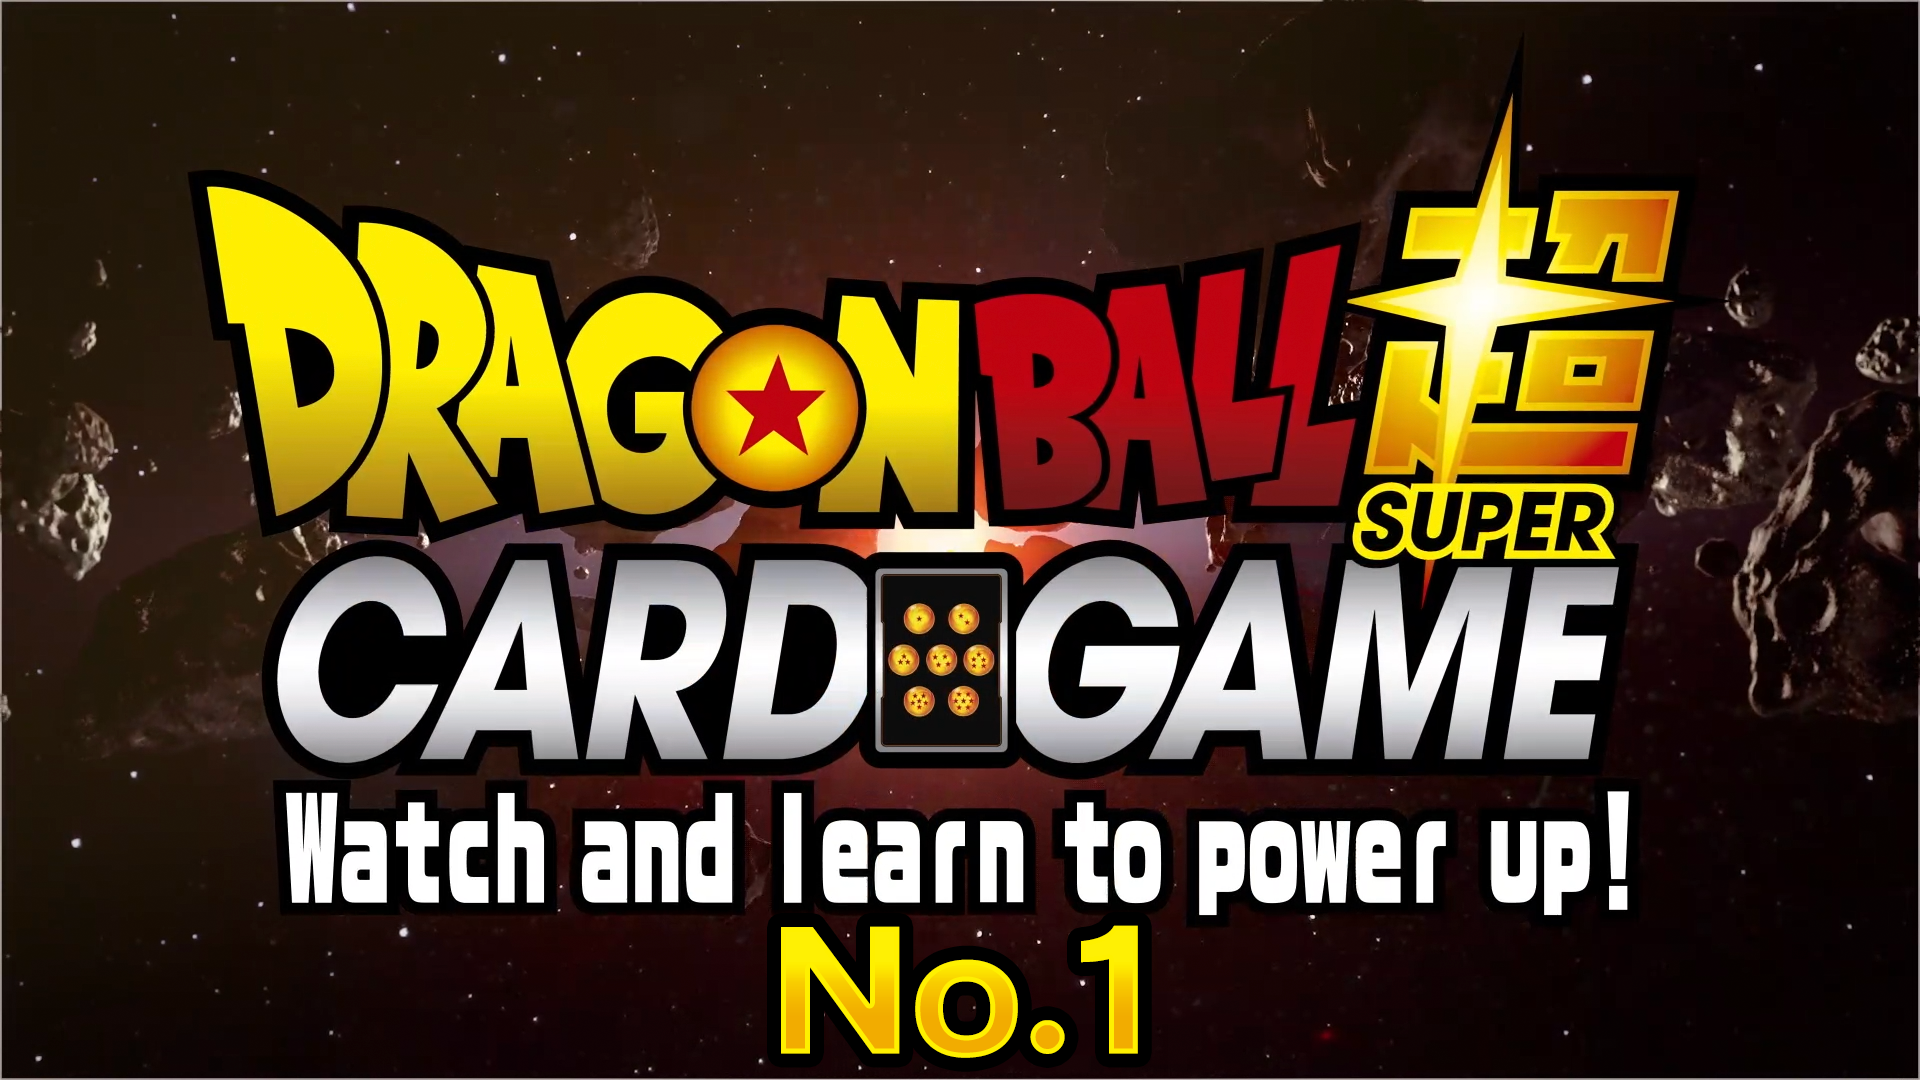 Dragon Ball Super Card Game: Regardez et apprenez à vous mettre sous tension ! N ° 1